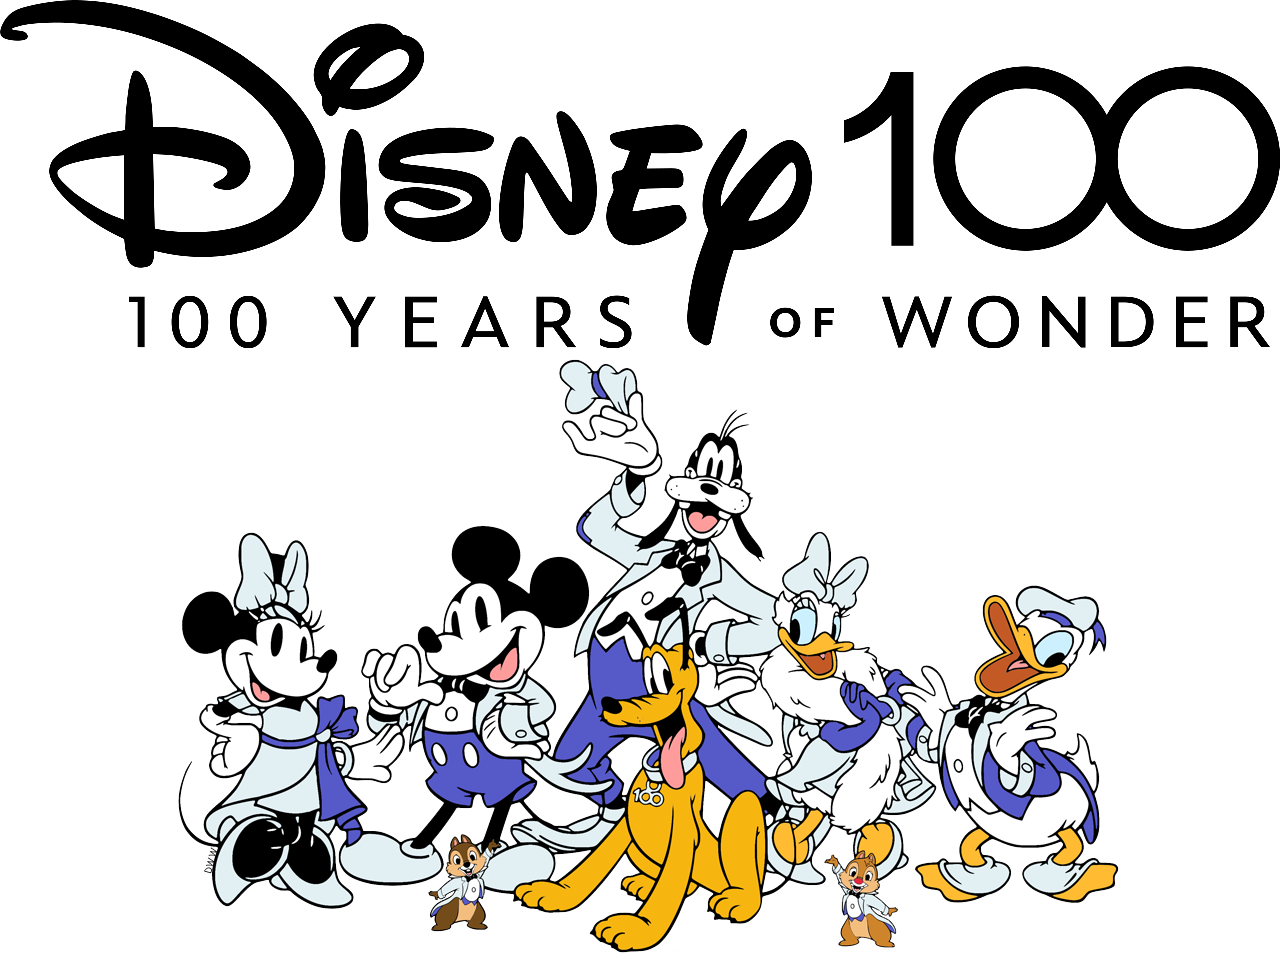 Disney 100 Years of Wonders by Disneydude94 on DeviantArt